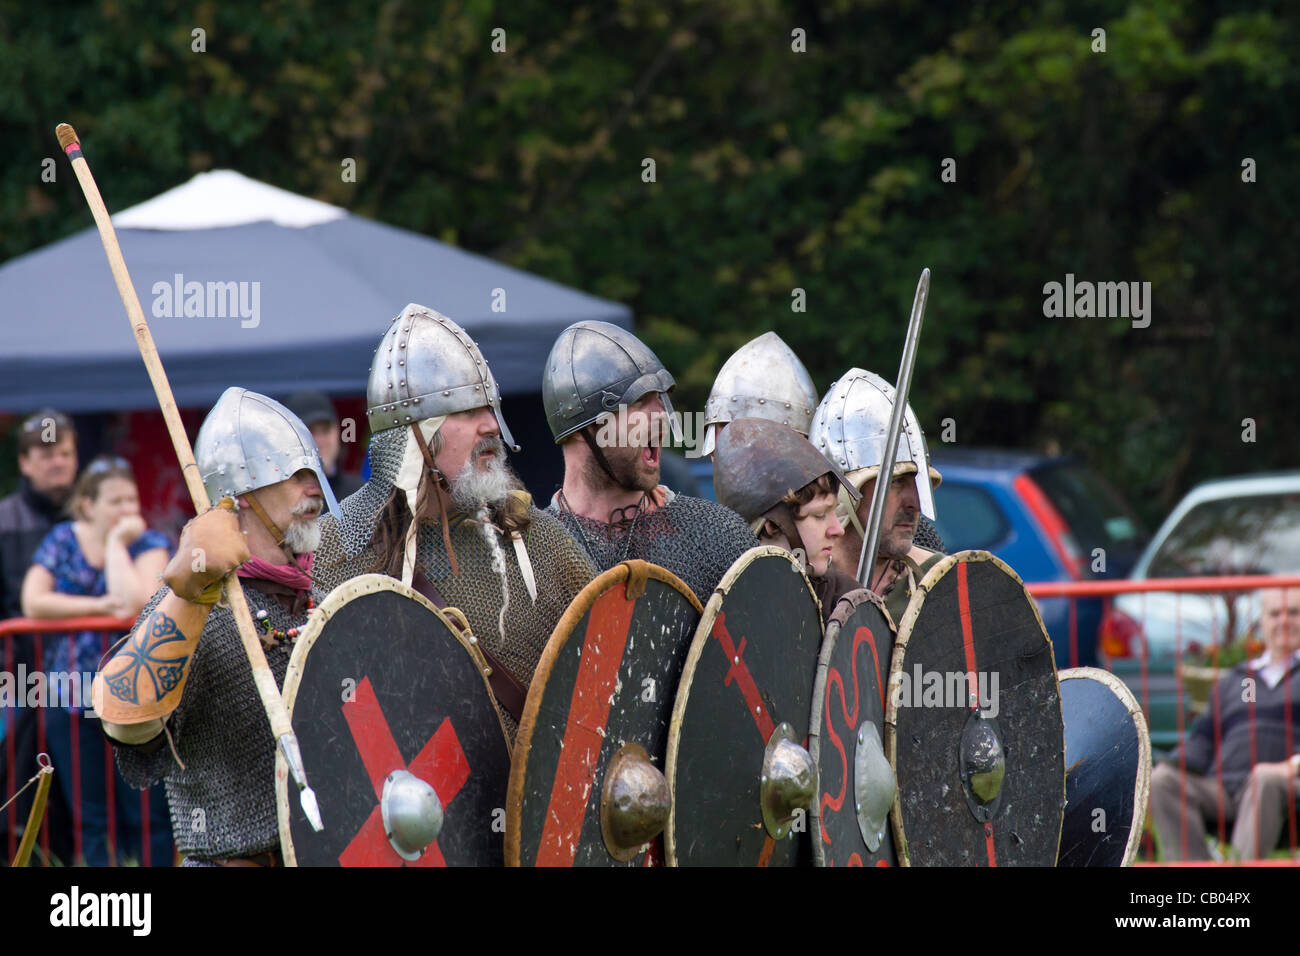 Wryngwyrm sont le côté Bedfordshire des Vikings le plus grand groupe de reconstitution au Royaume-Uni montrent des scènes de combat viking Banque D'Images